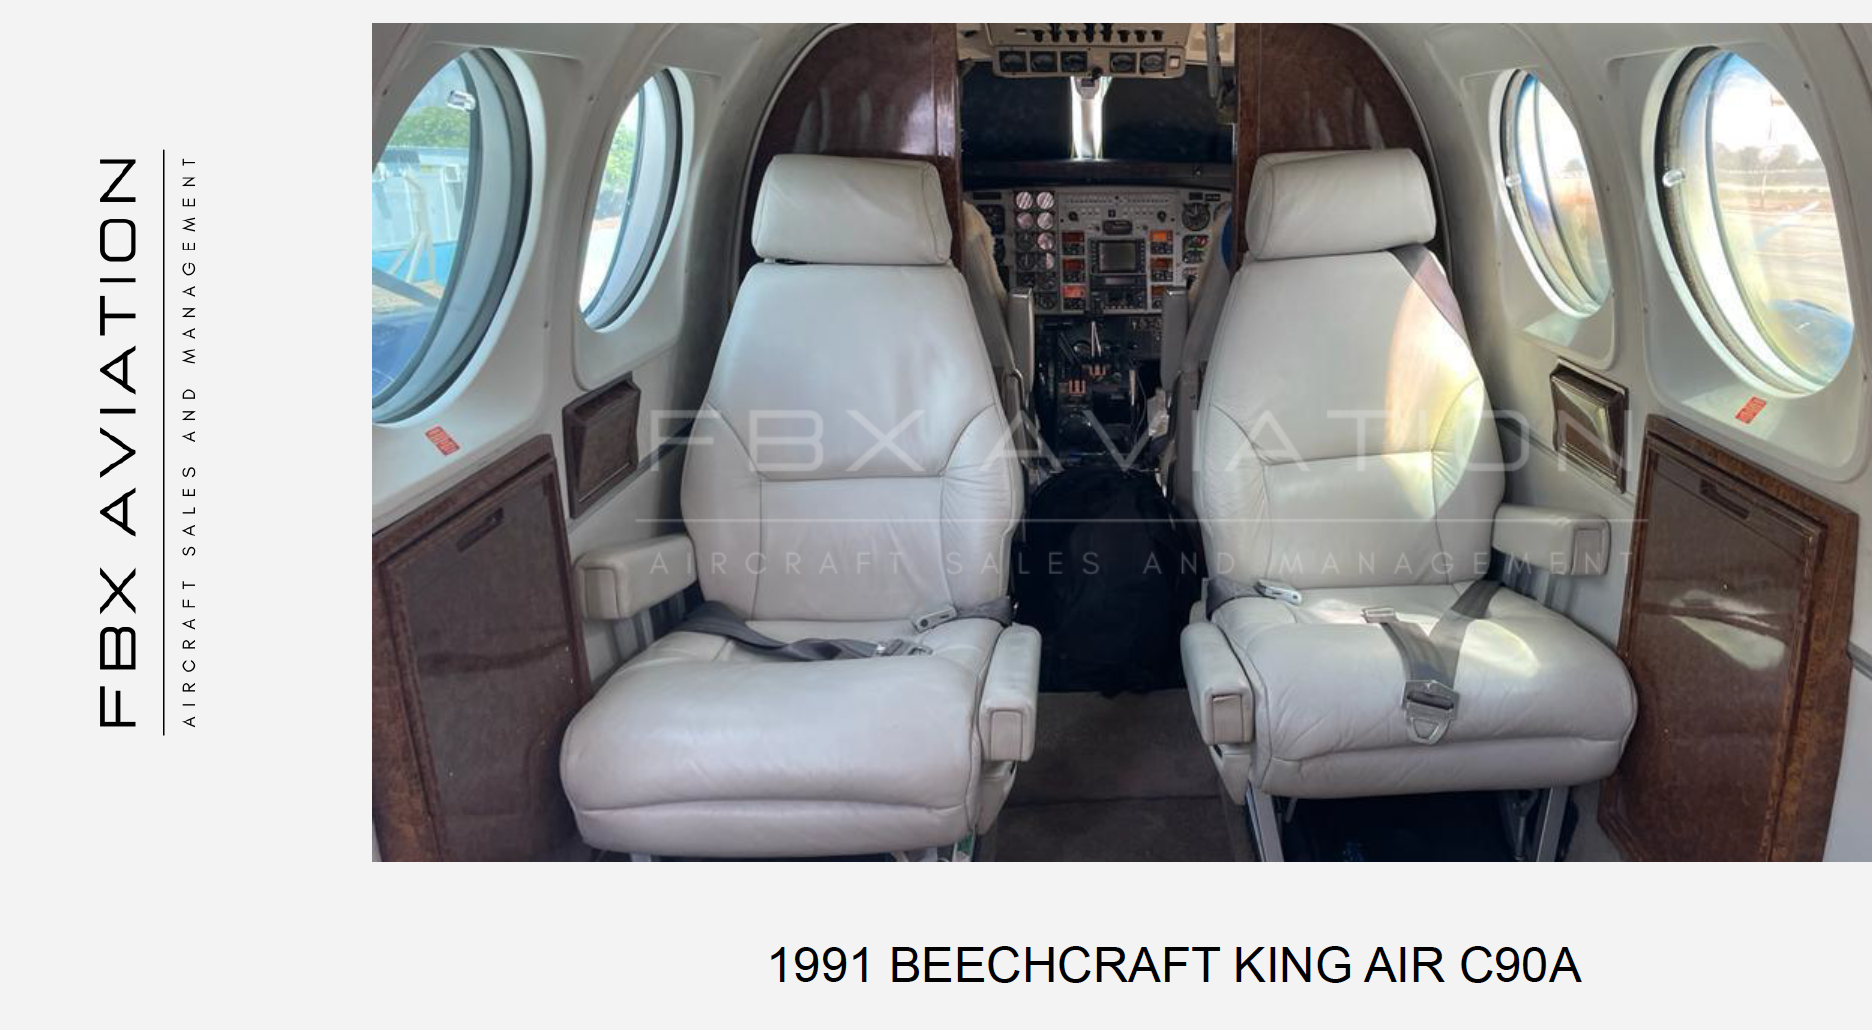 BEECHCRAFT KING AIR C90A 1991